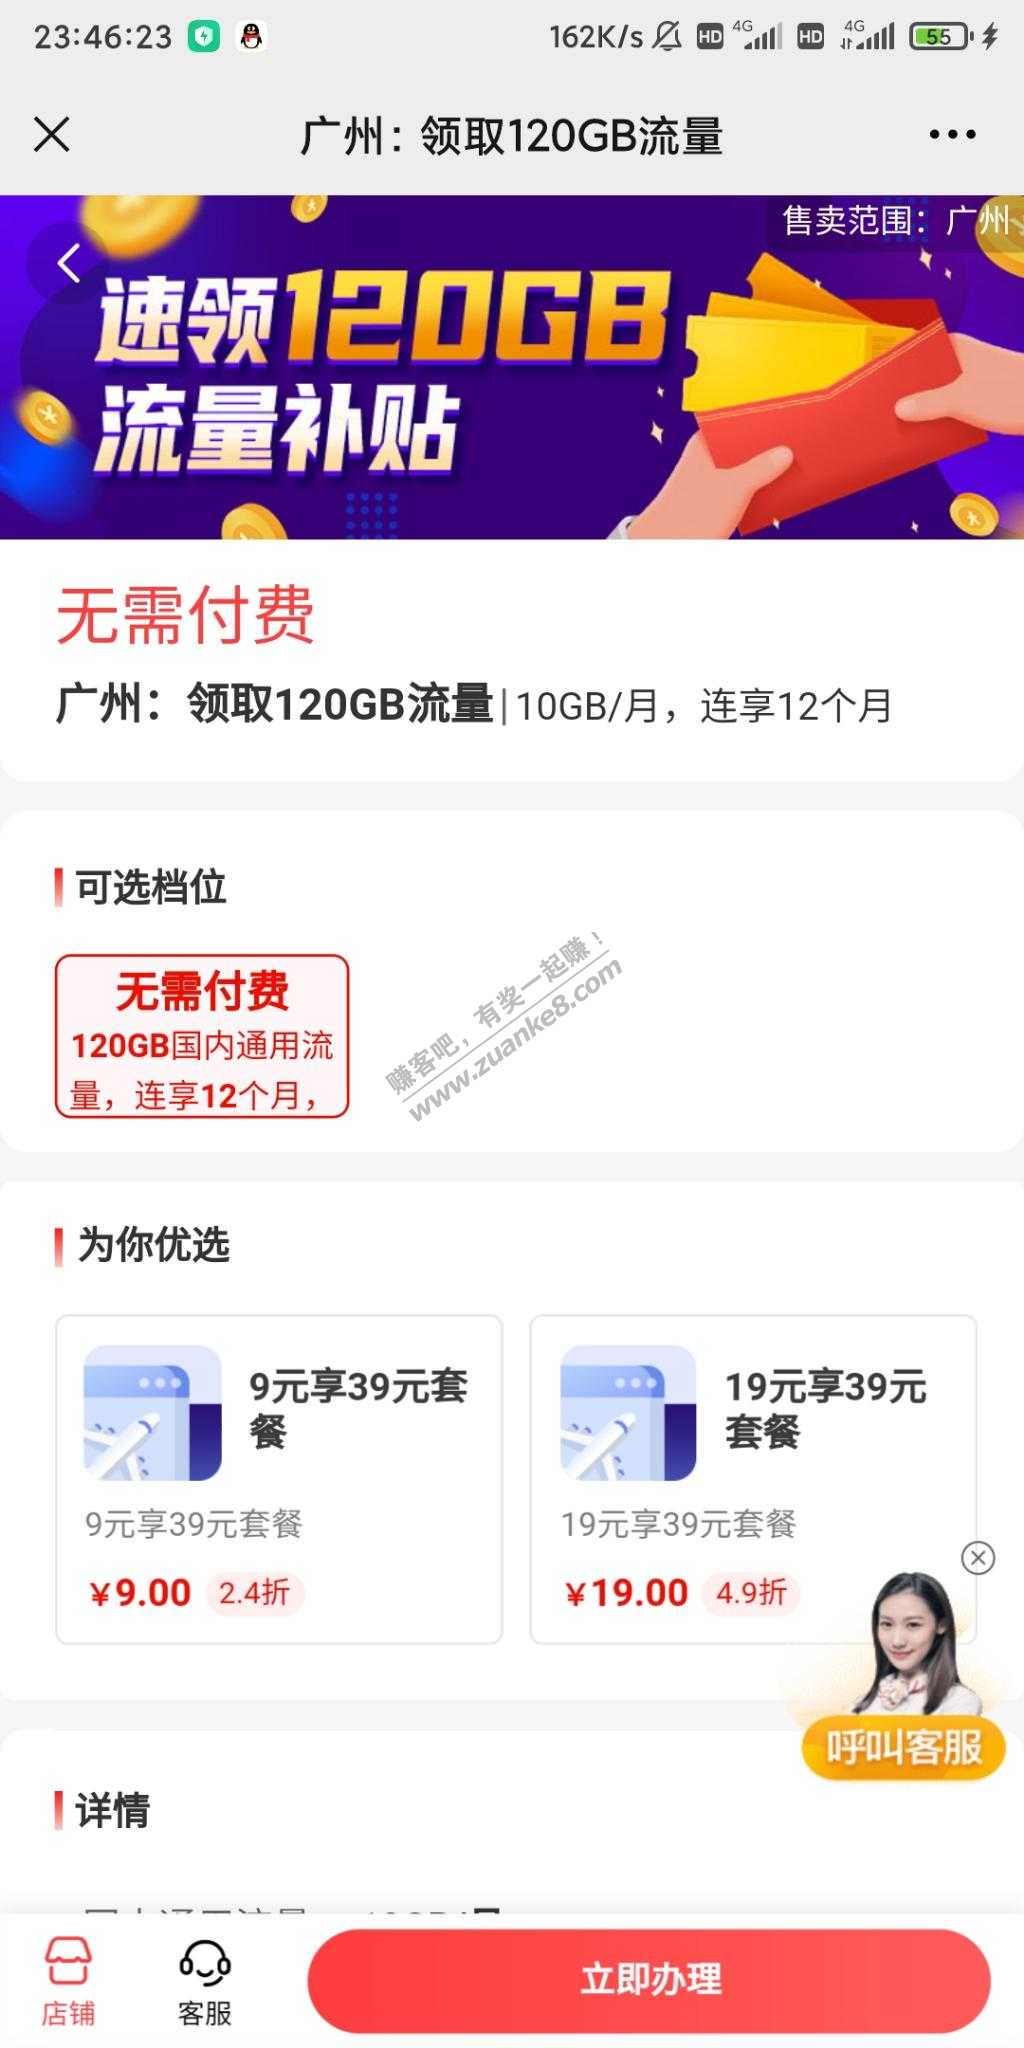 广州移动10G/月-合约期12个月-从化可上-惠小助(52huixz.com)